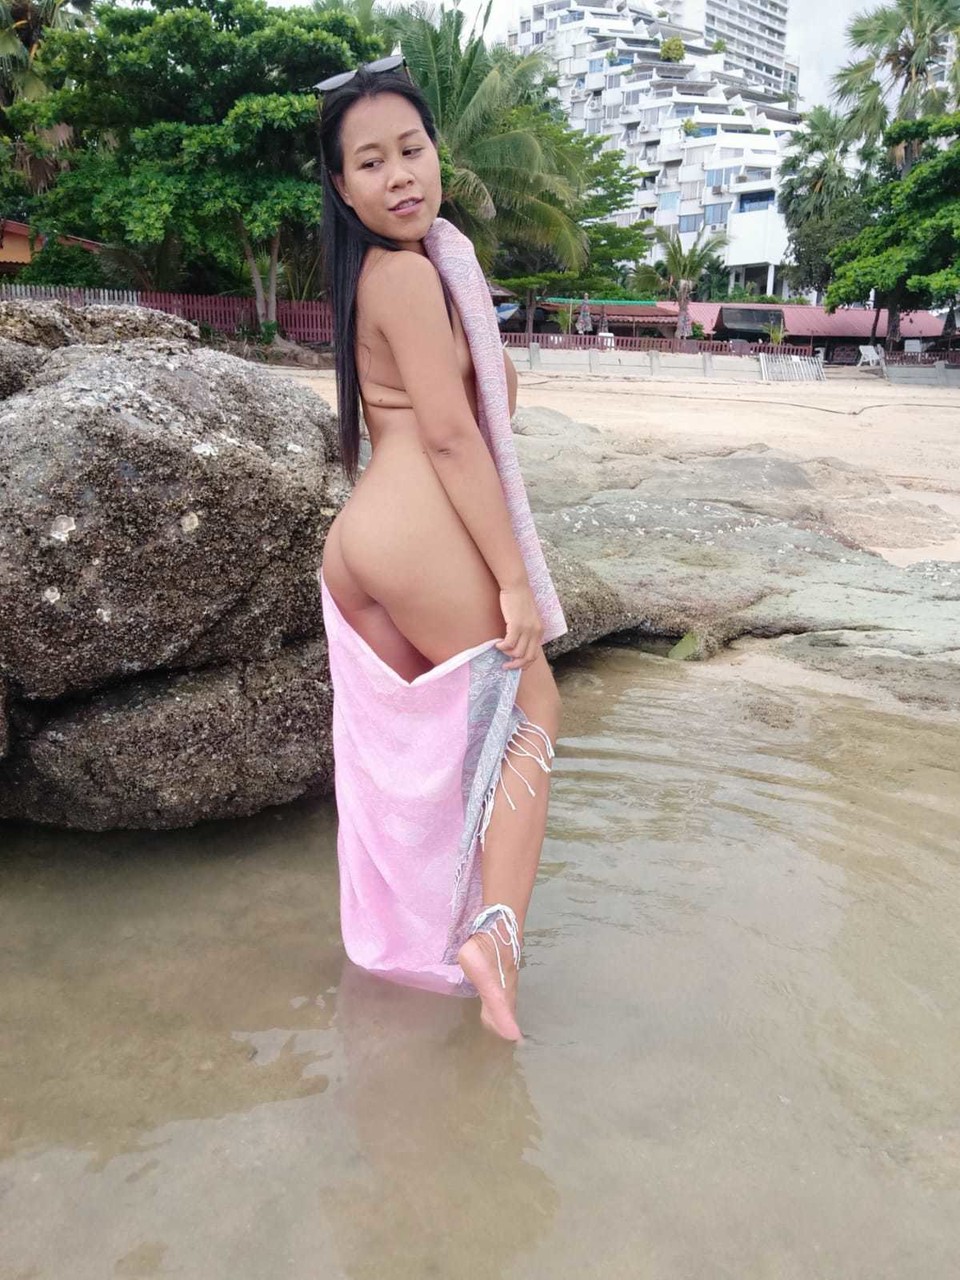 Gorgeous Asian amateur Kiki Asia shows her hot ass in a bikini at the beach photo porno #425545193 | TukTuk Thailand Pics, Kiki Asia, Thai, porno mobile